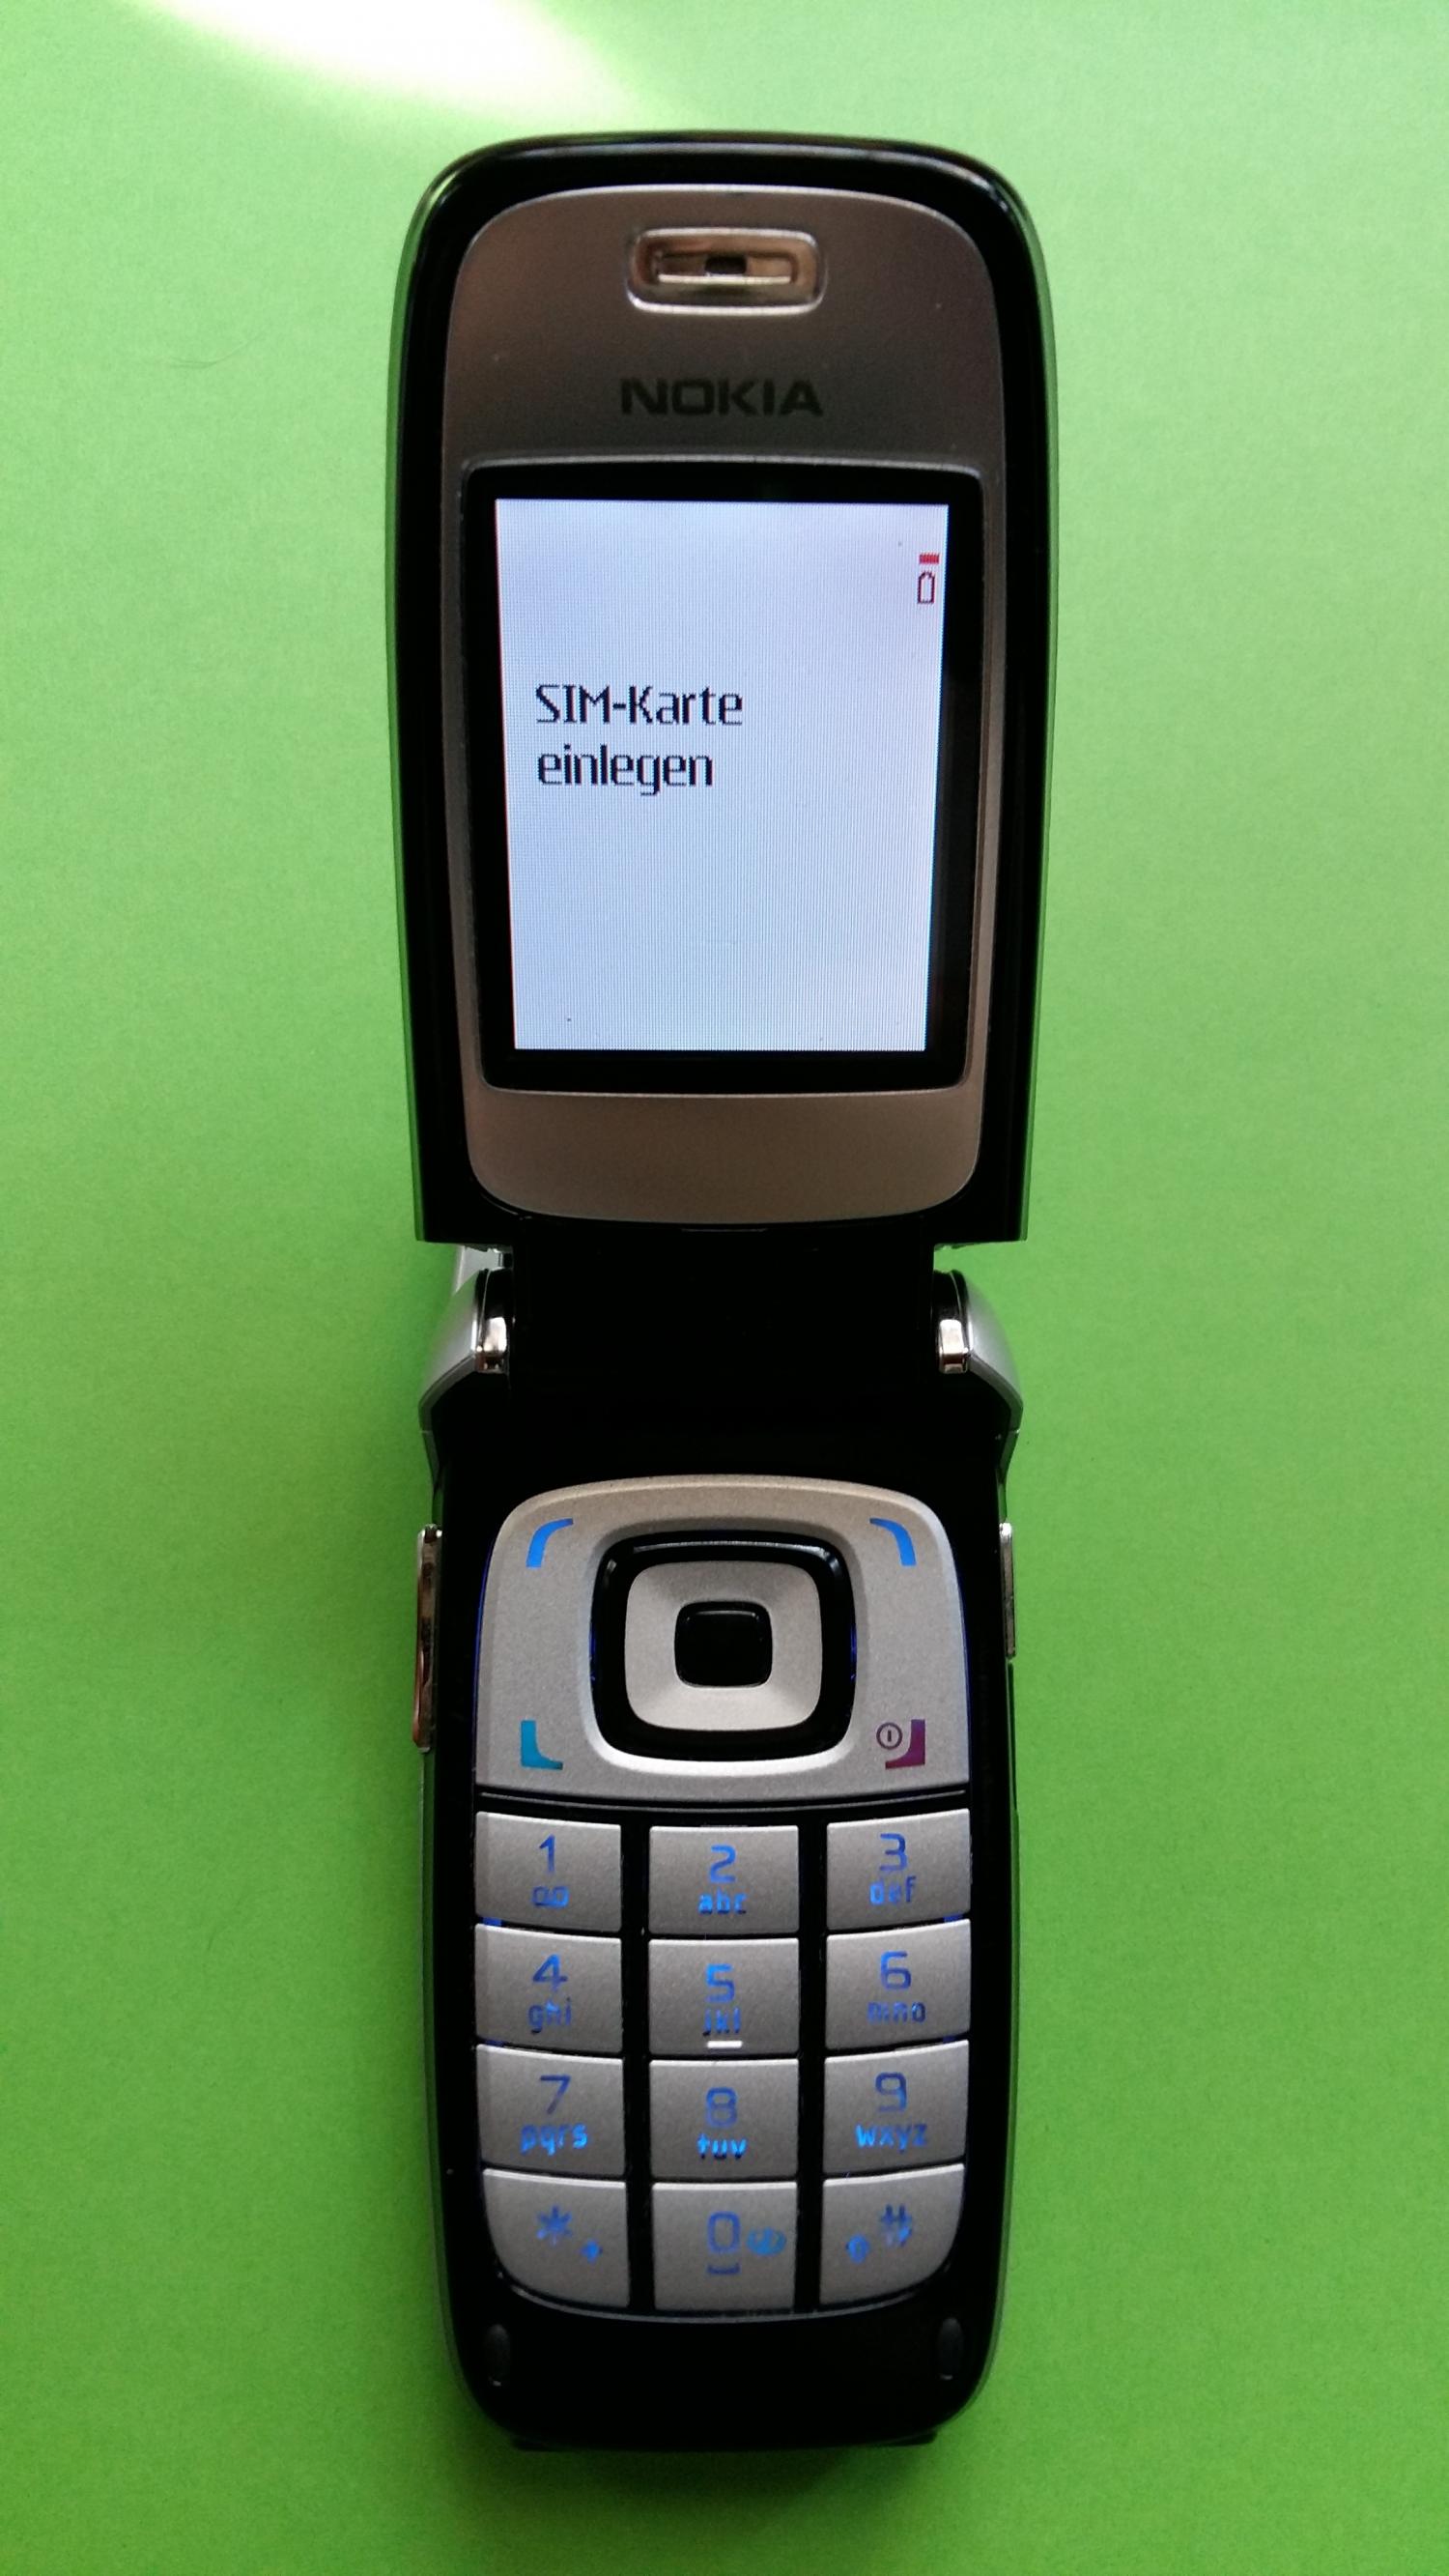 image-7323652-Nokia 6101 (8)2.jpg